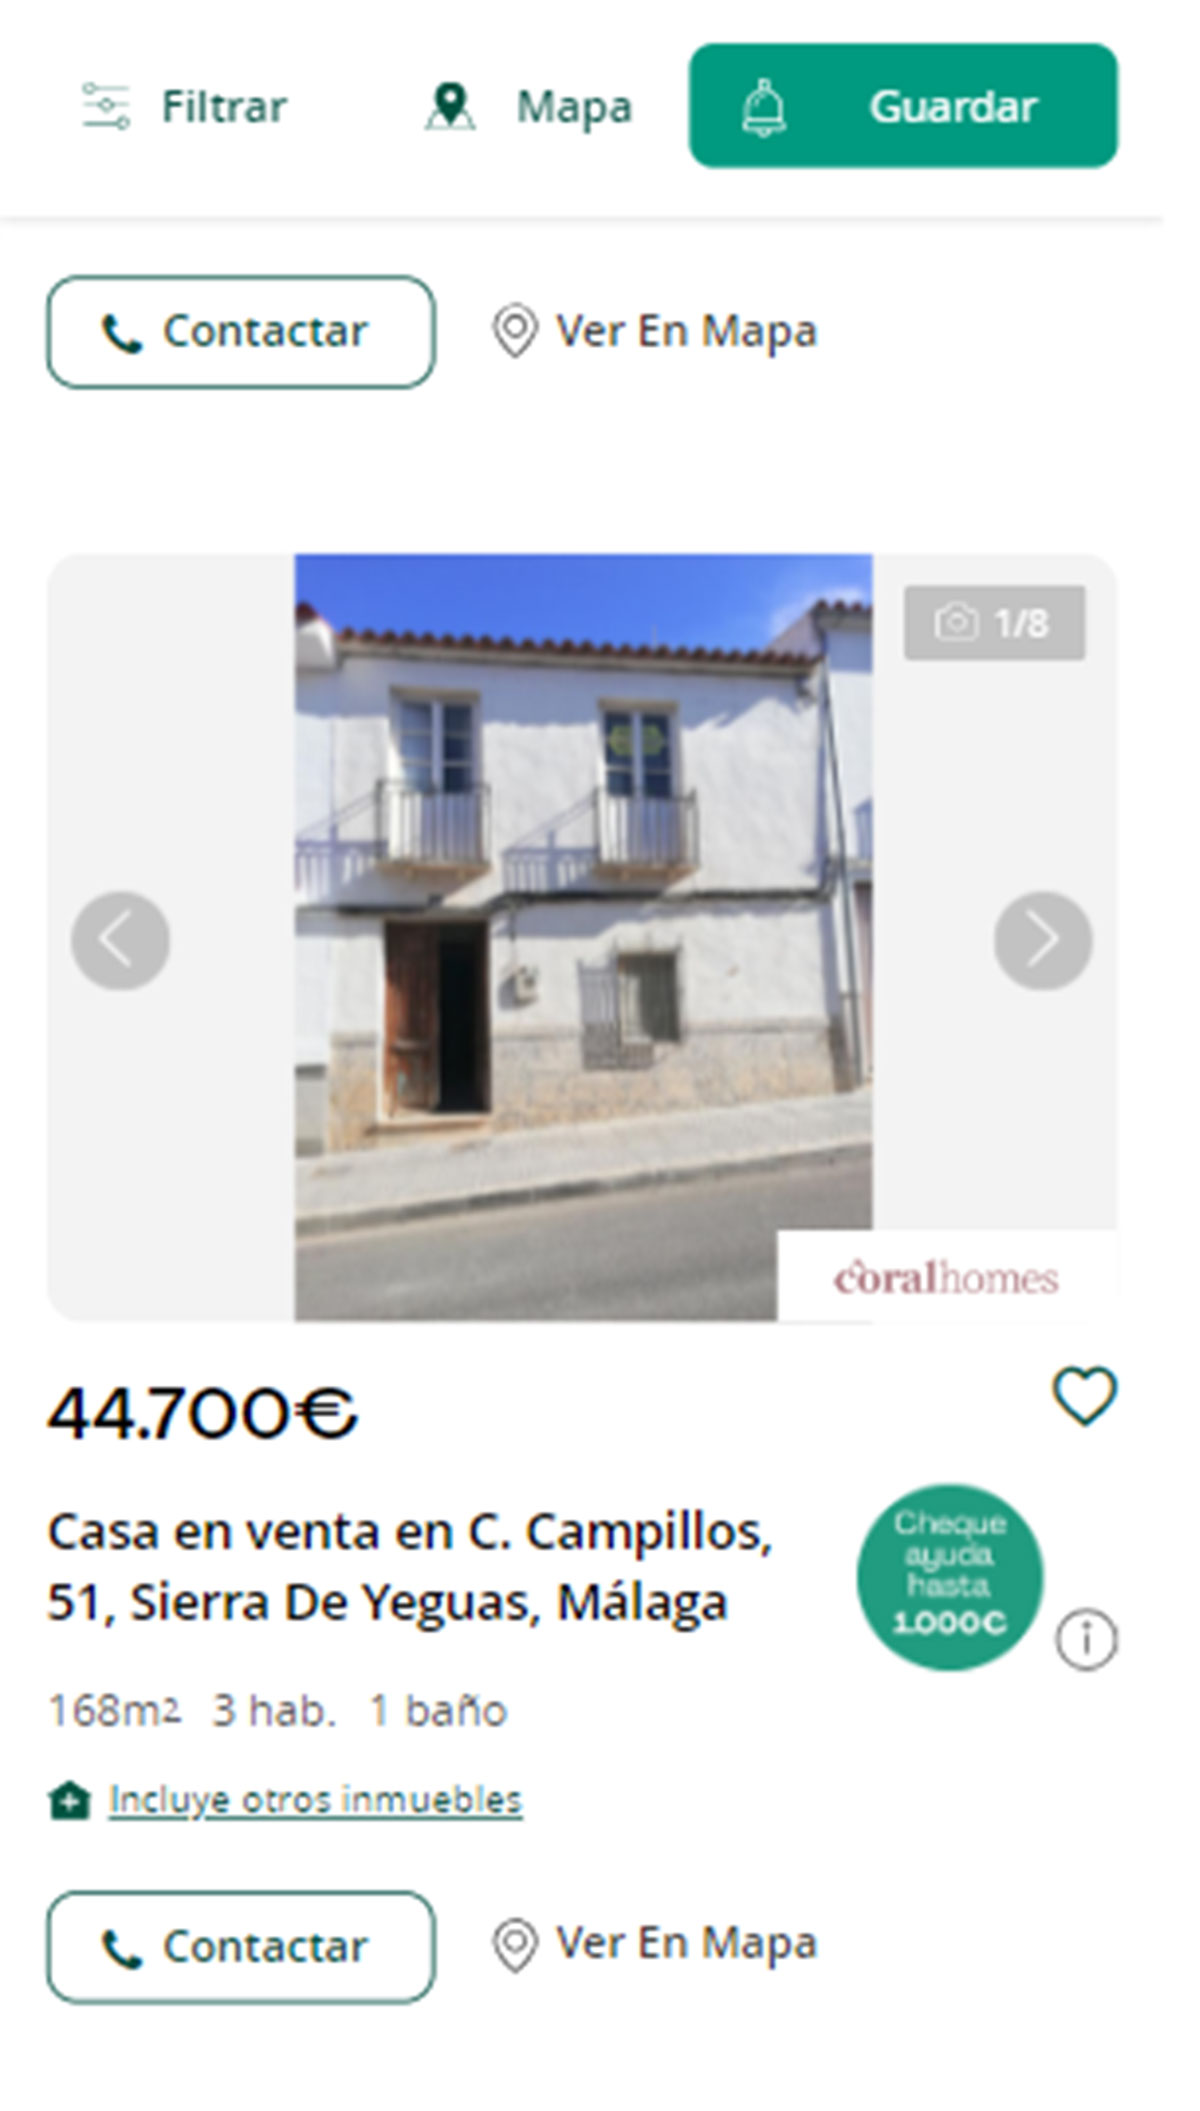 Piso a la venta en Málaga por menos de 45.000 euros